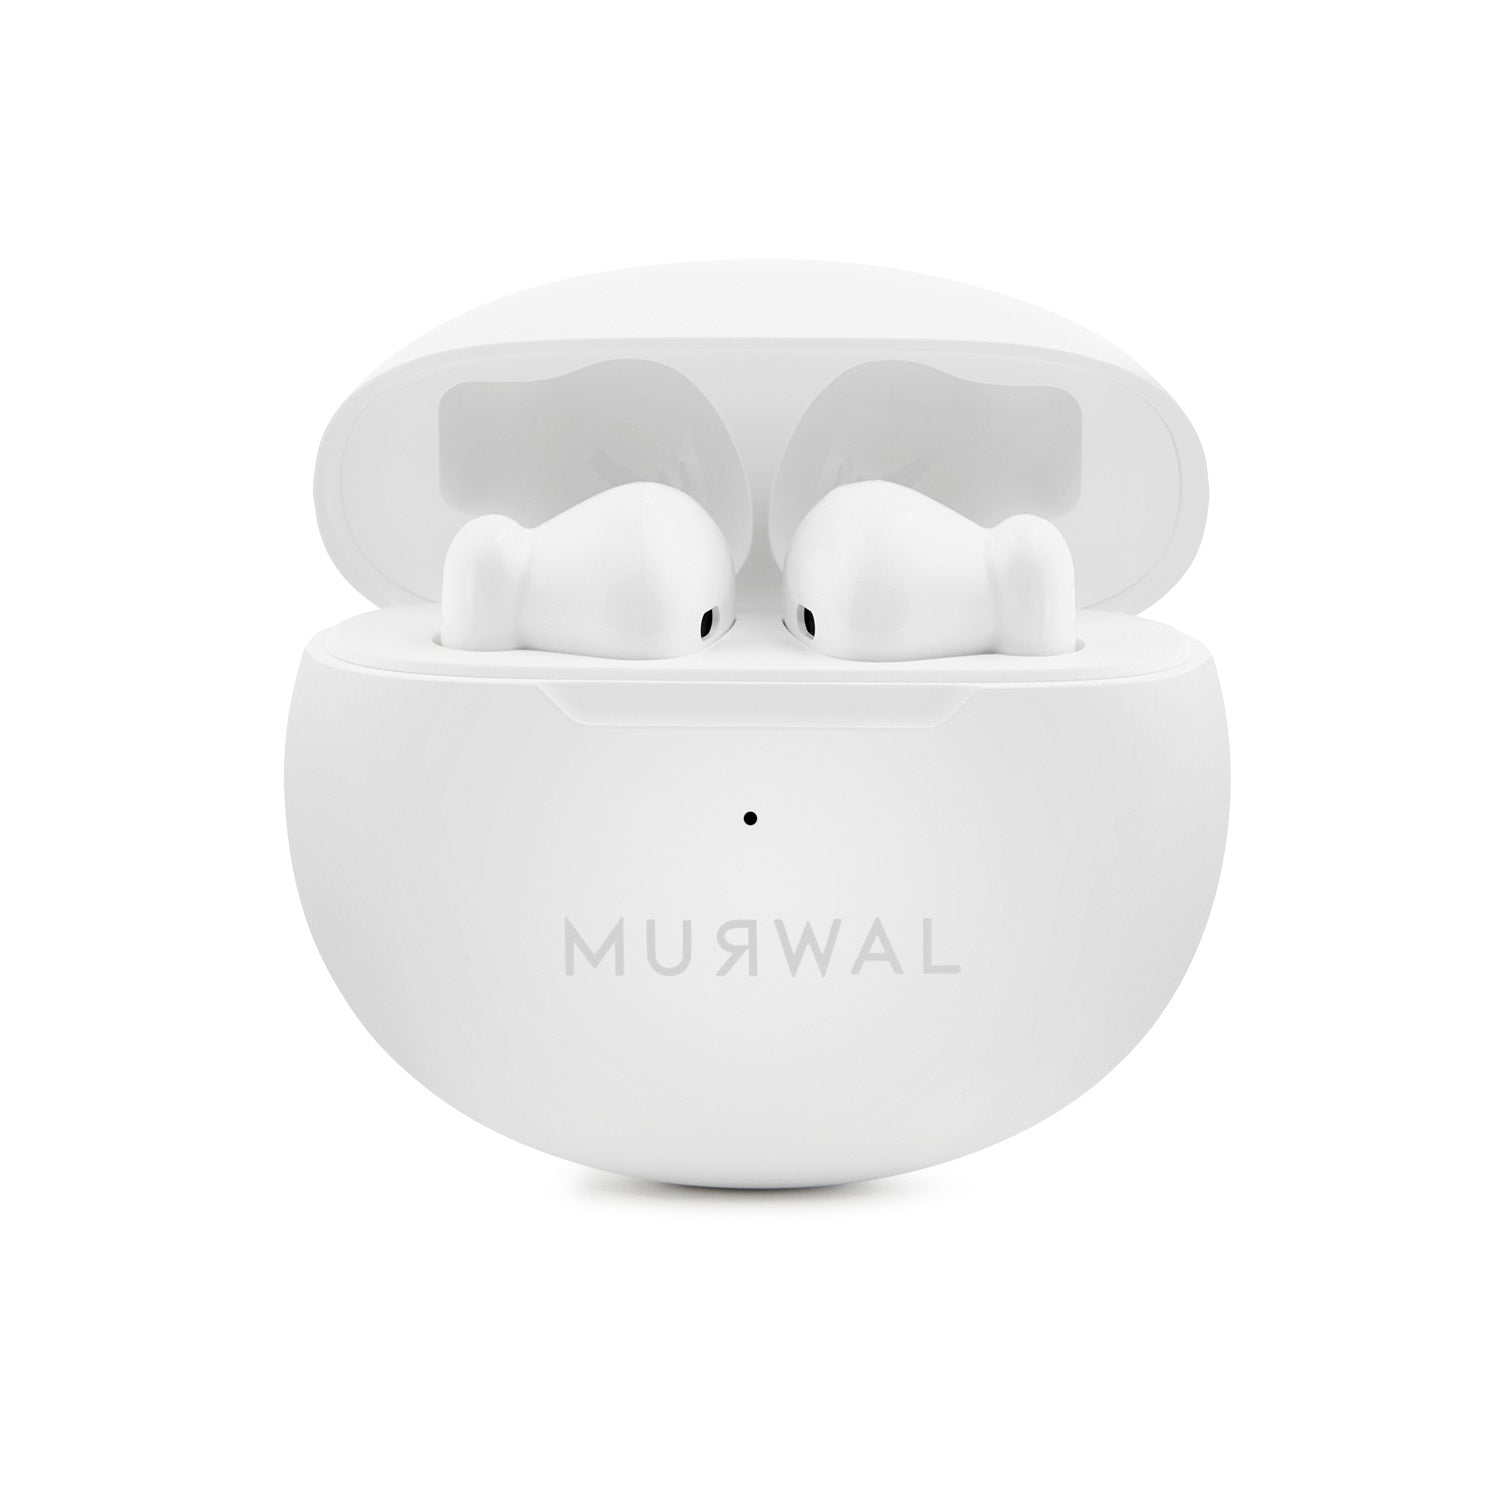 AURICULARES Bluetooth inalámbricos MURWAL GLOBE II con microfono 20 Horas  de reproducción, IPX5 Impermeable, reducción de Ruido para Trabajar o  Viajar ideales para el día a día Ajuste perfecto en oreja